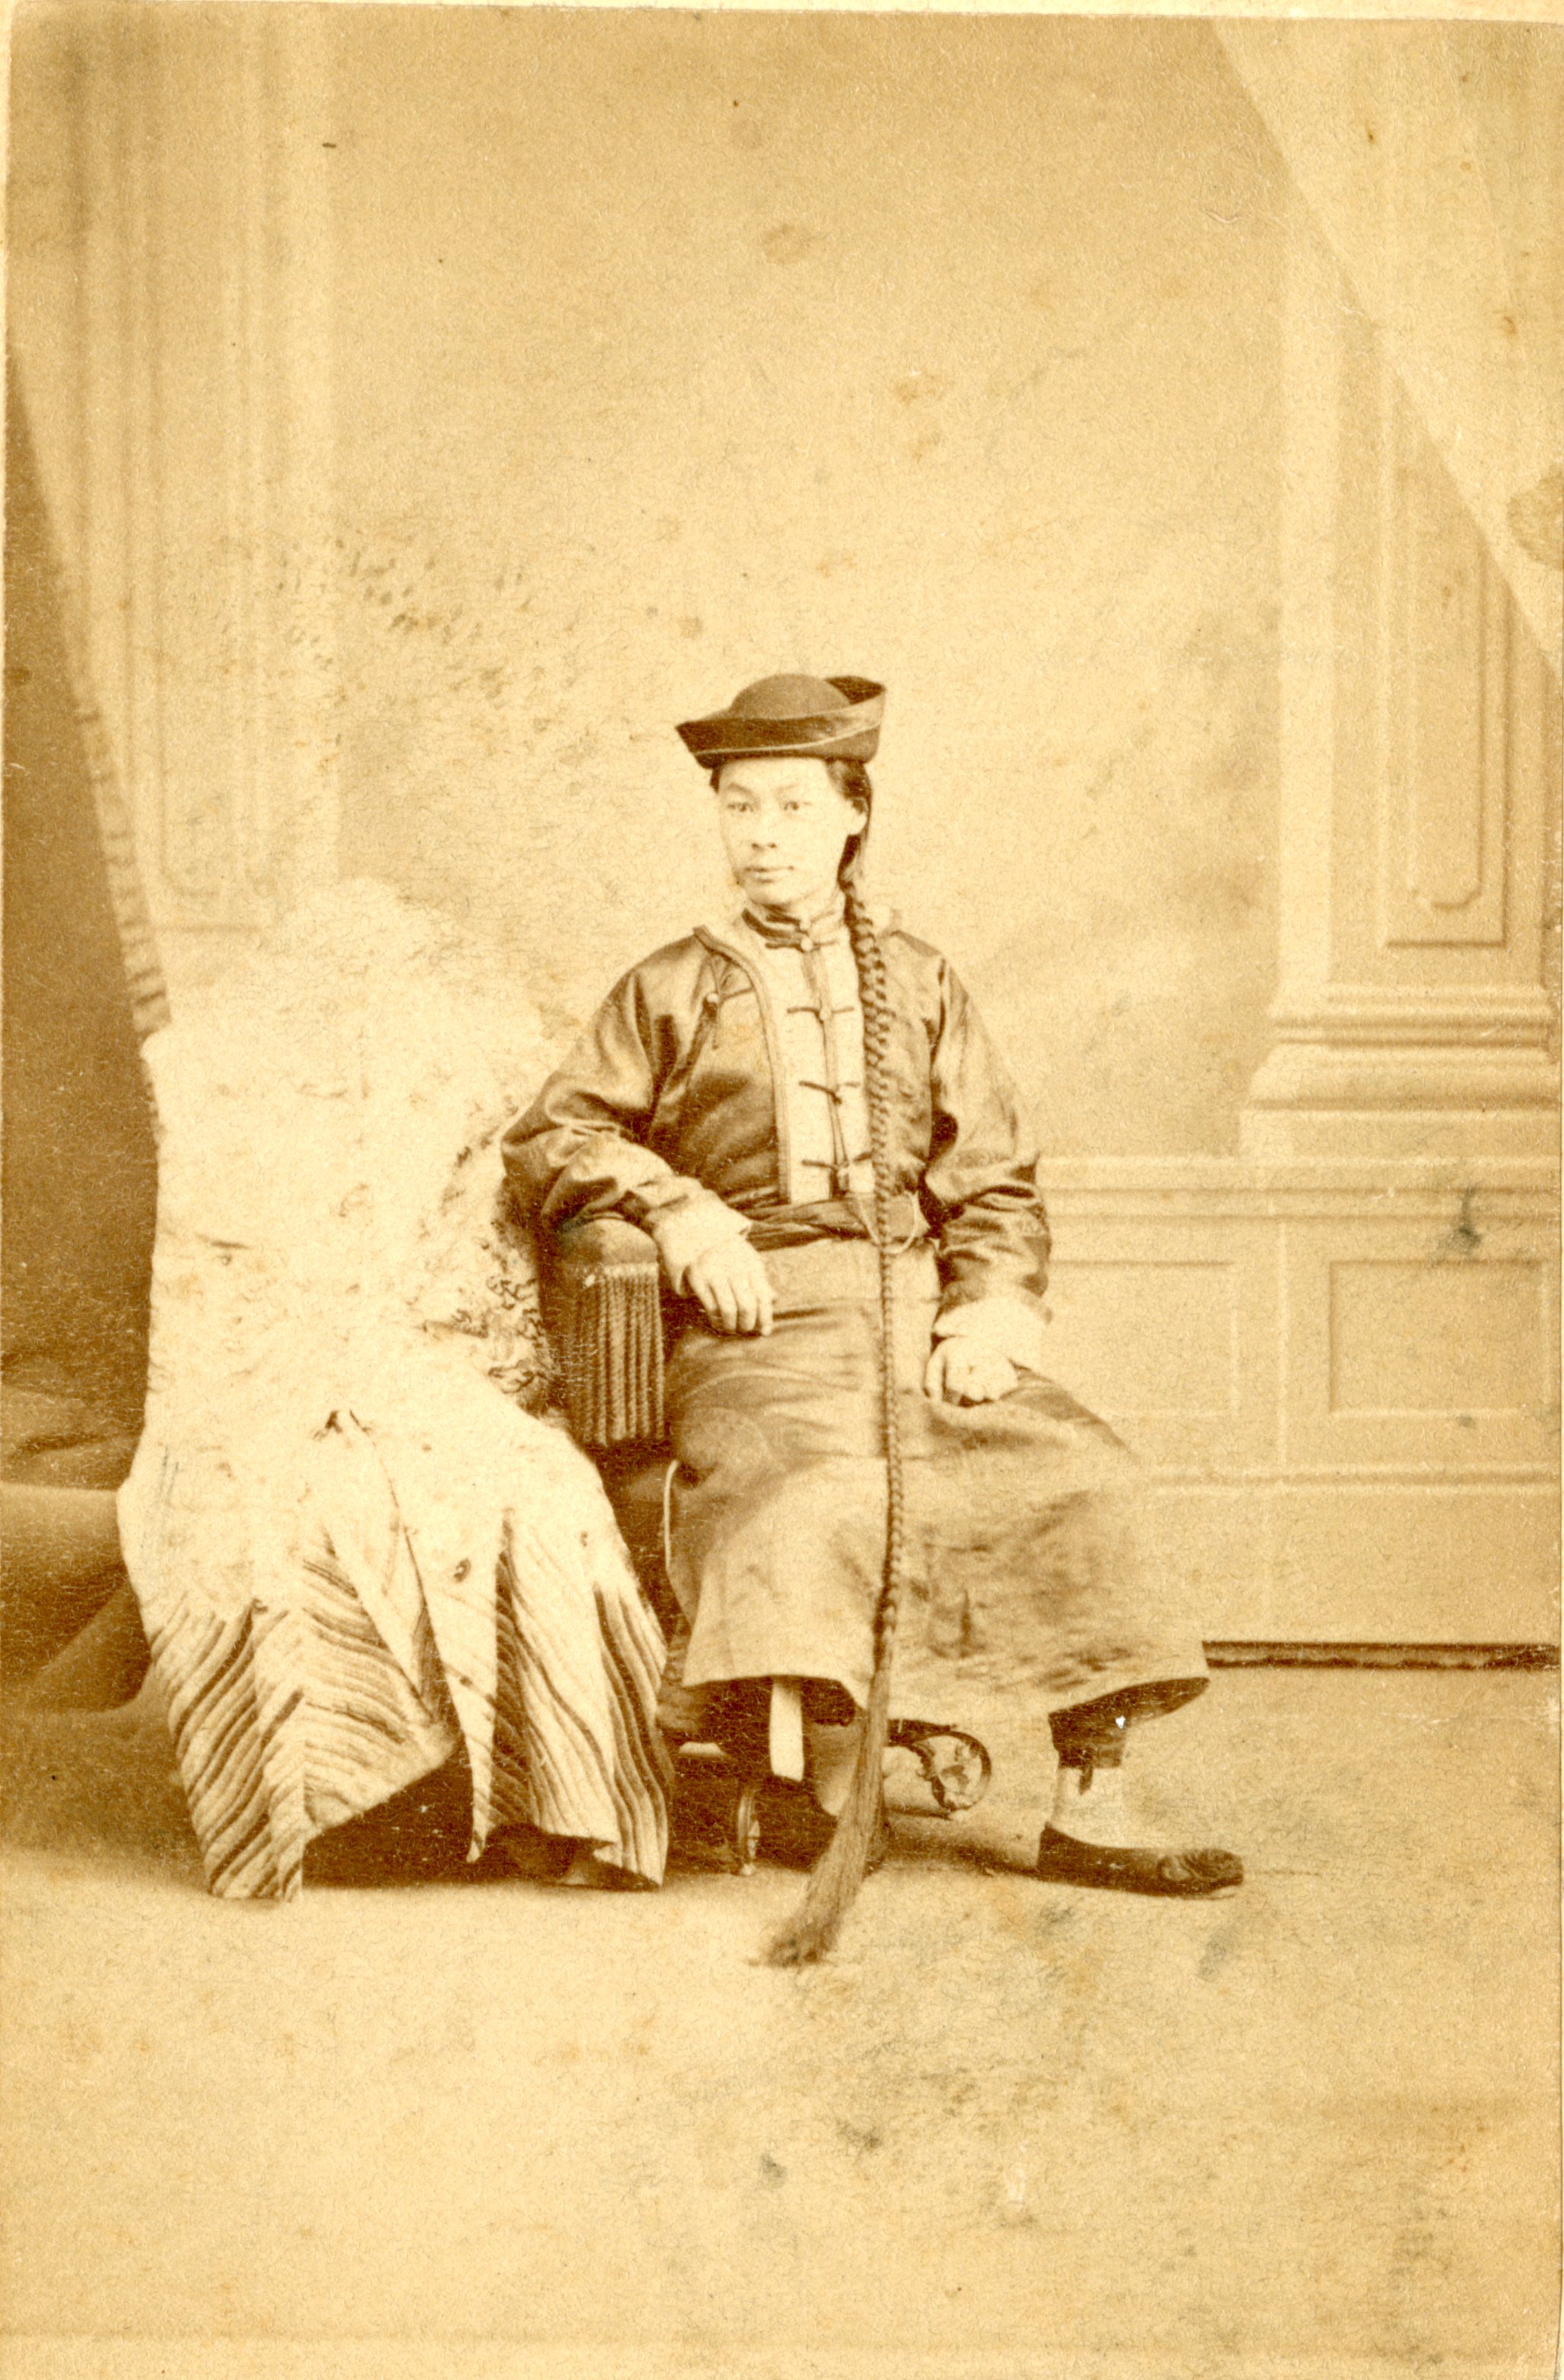 Uma mulher com roupas tradicionais posa em uma cadeira.